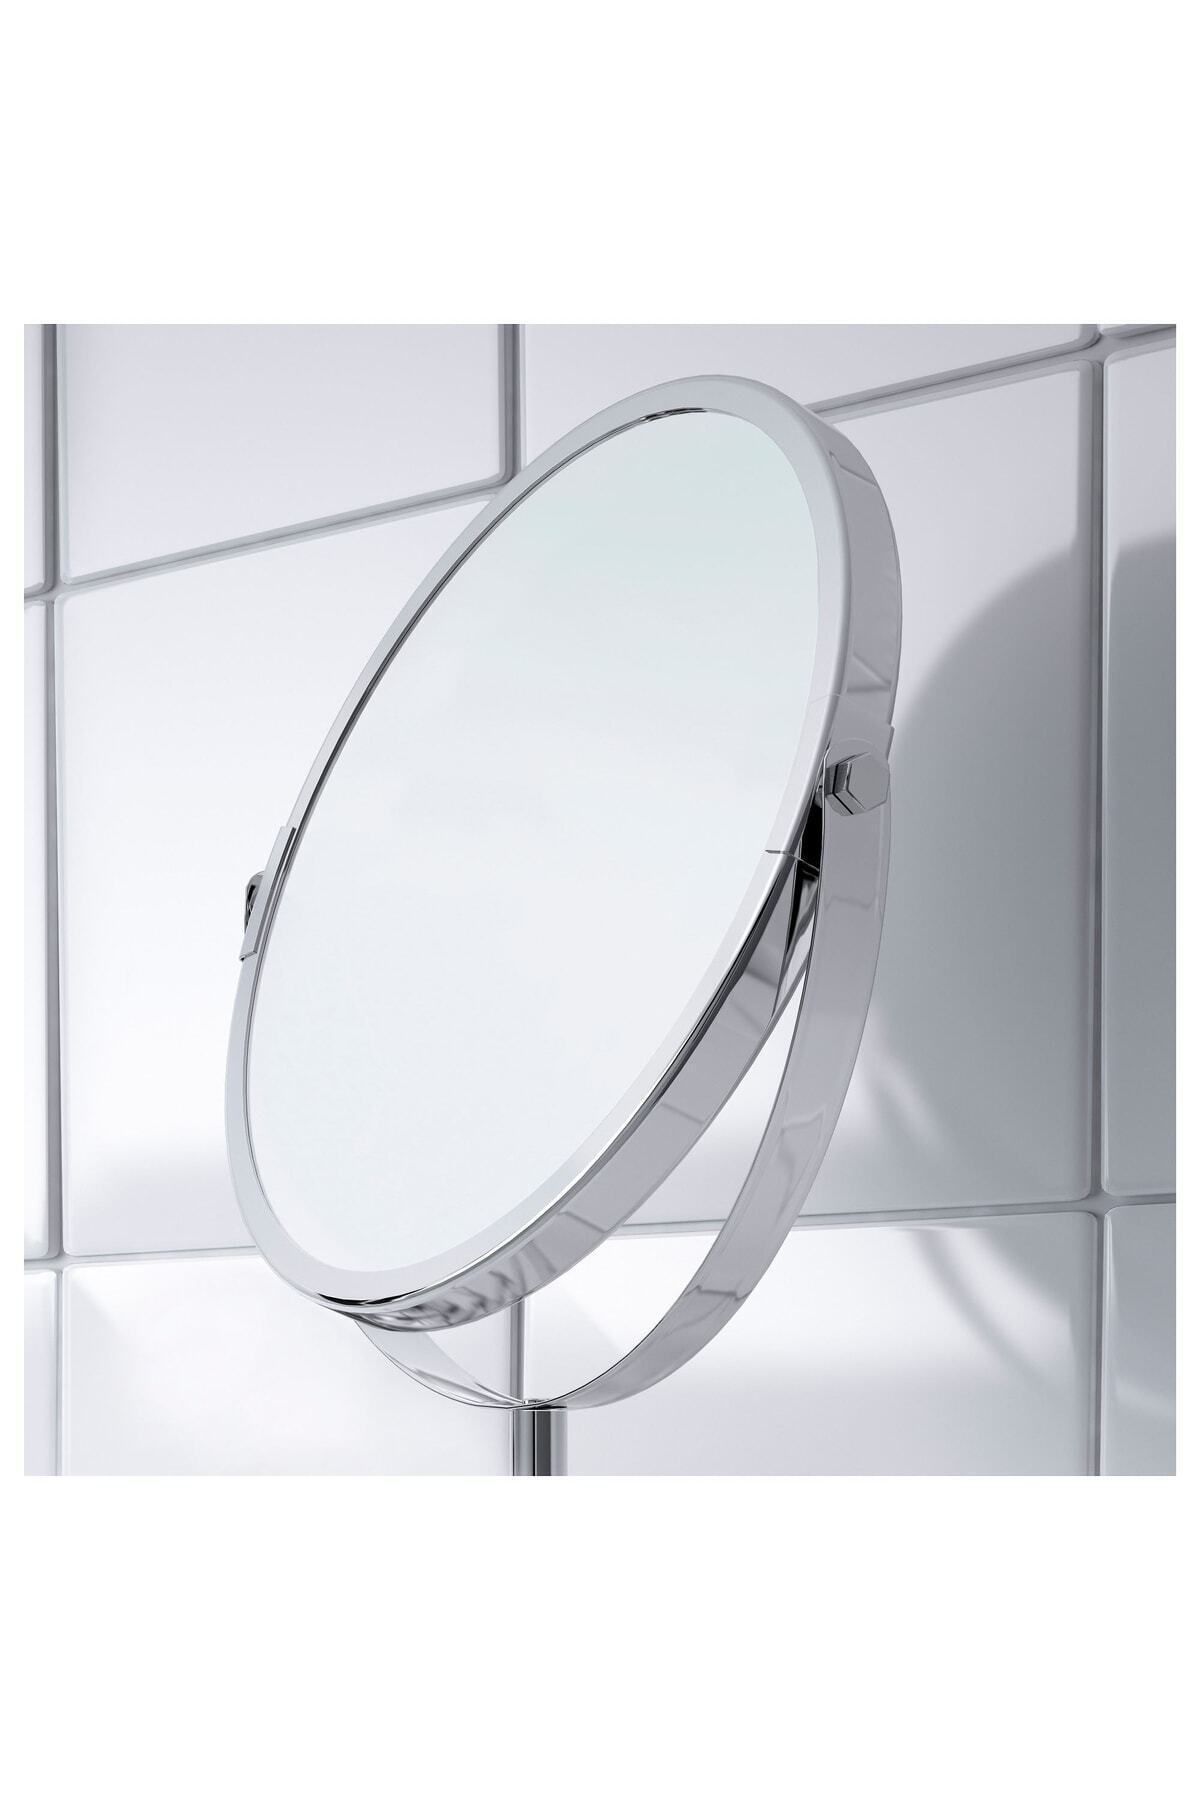 IKEA Büyüteçli Ayna Makyaj Aynası Paslanmaz Çelik Ayna 17 Cm Çap Çift Taraflı Bir Tarafı 3 Kez Büyütür